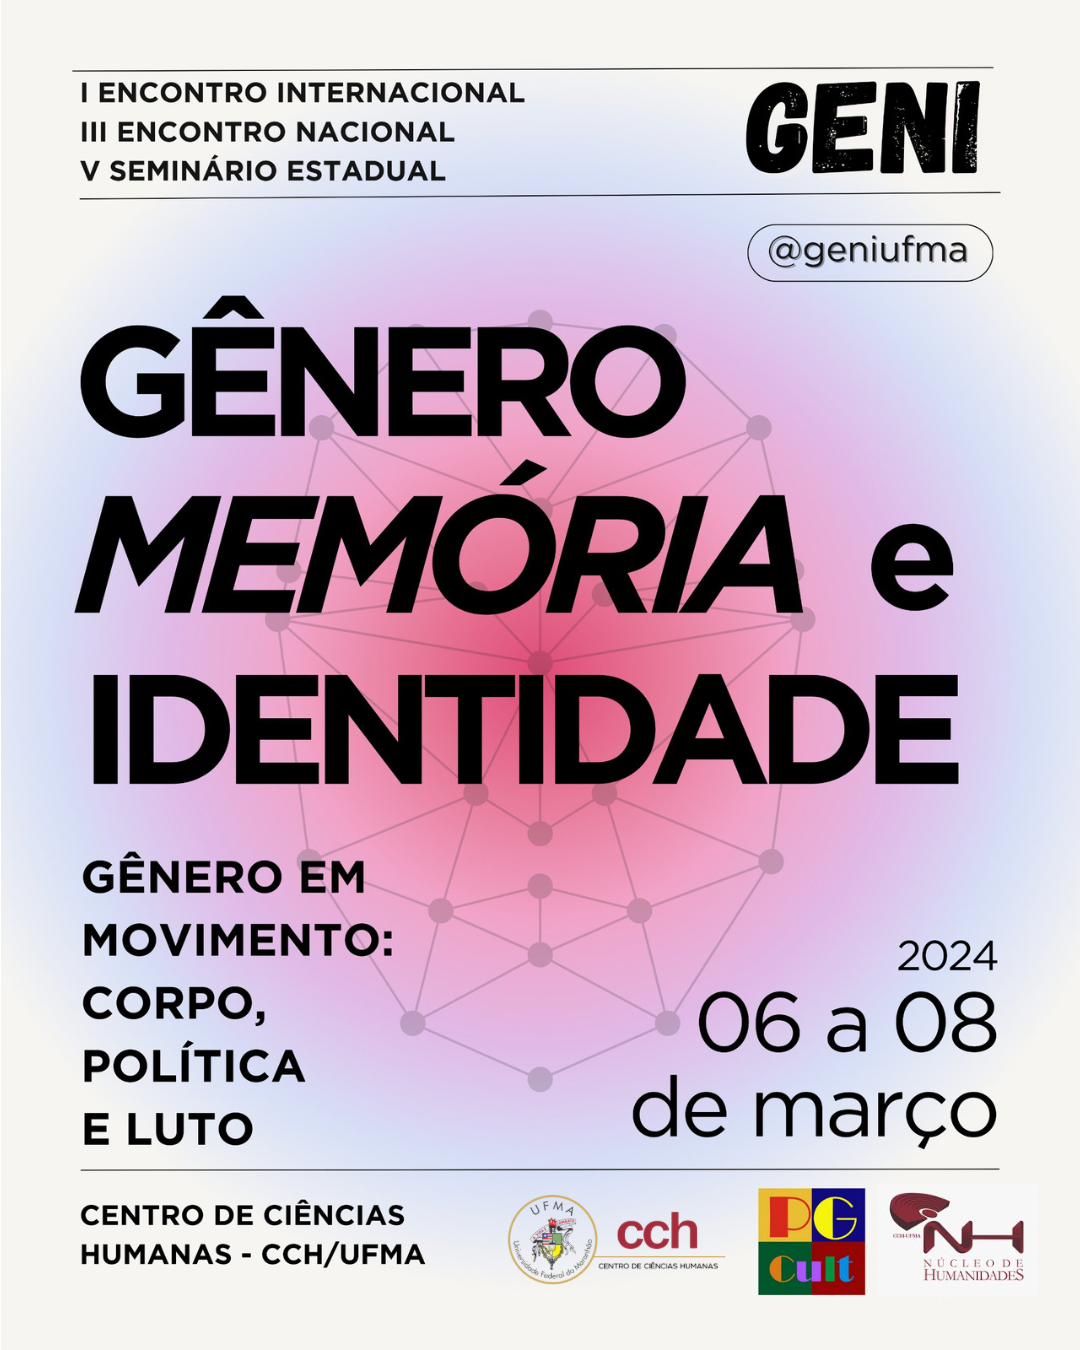 Gênereo, memória e identidade: evento recebe submissões de trabalhos até sábado, 24